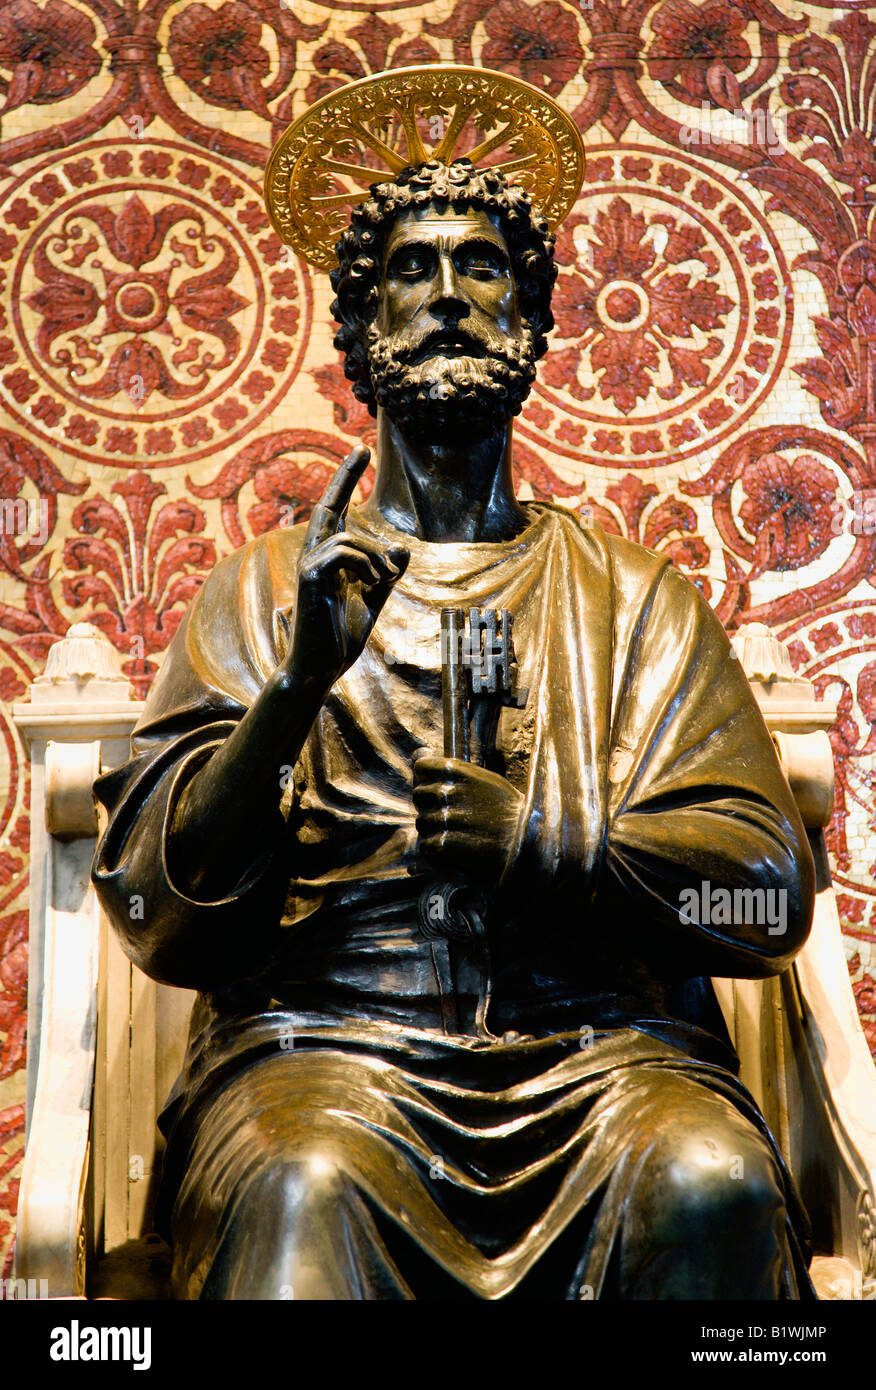 Italia Lacio Roma ciudad del Vaticano, la Basílica de San Pedro la estatua de bronce del siglo XIII de San Pedro la celebración de la tecla por Arnolfo di cambi Foto de stock